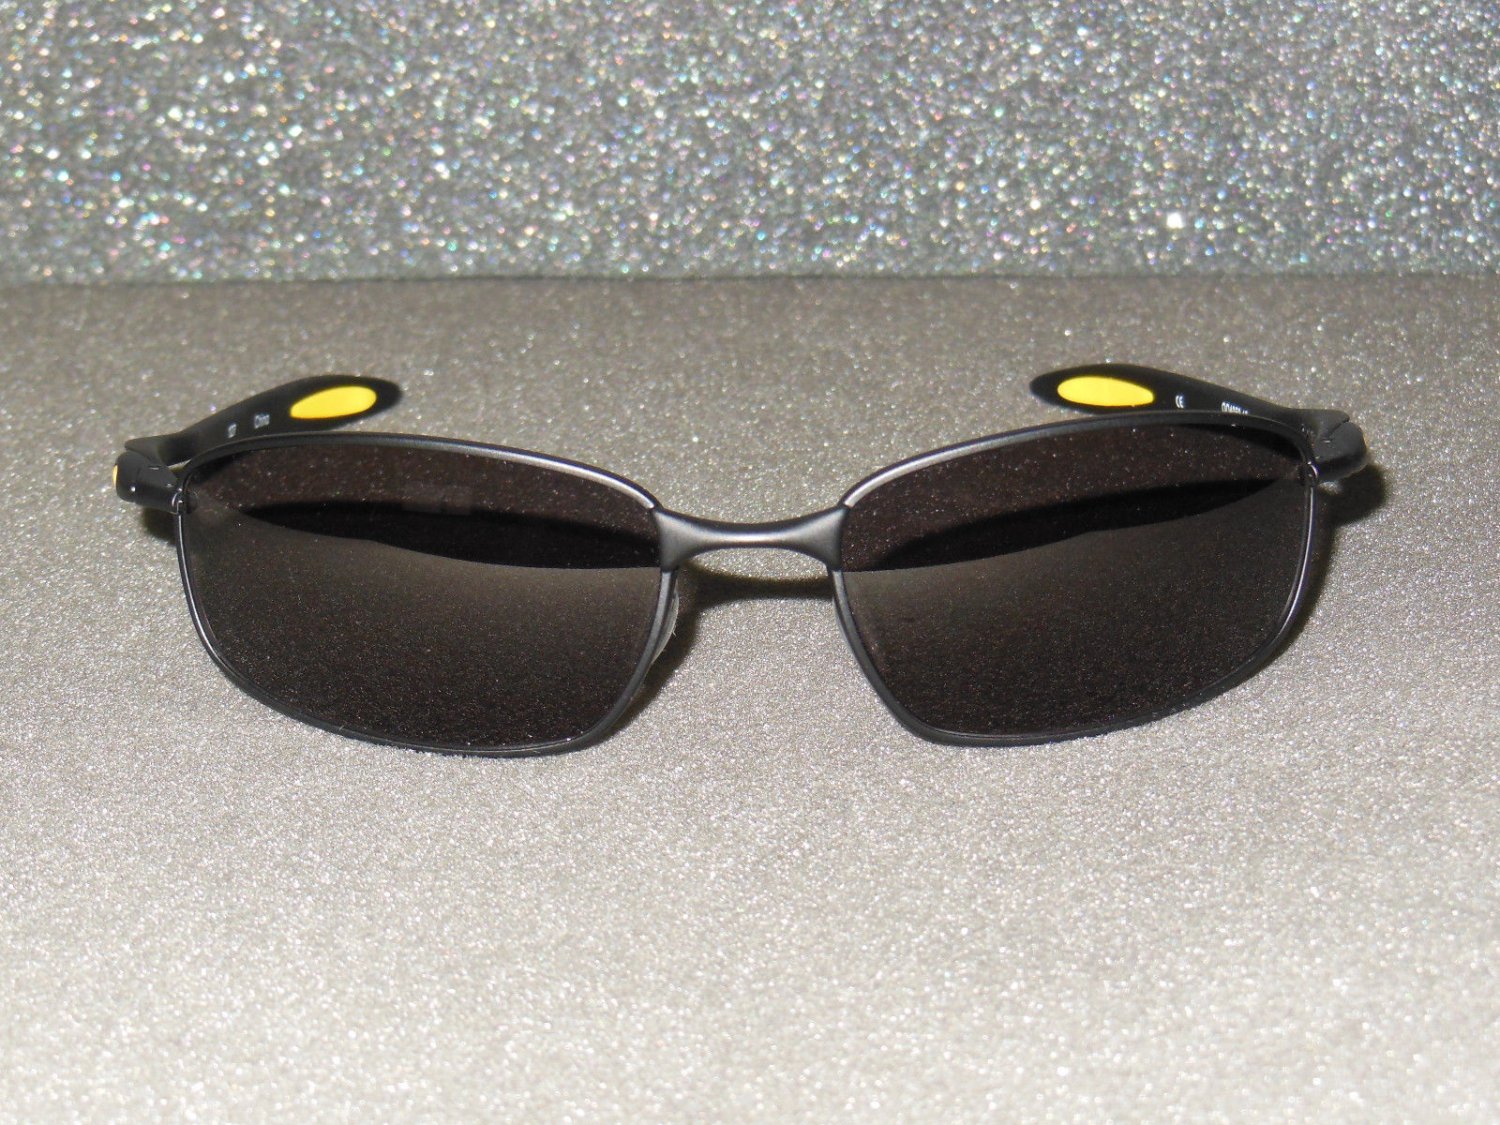 blender sunglasses